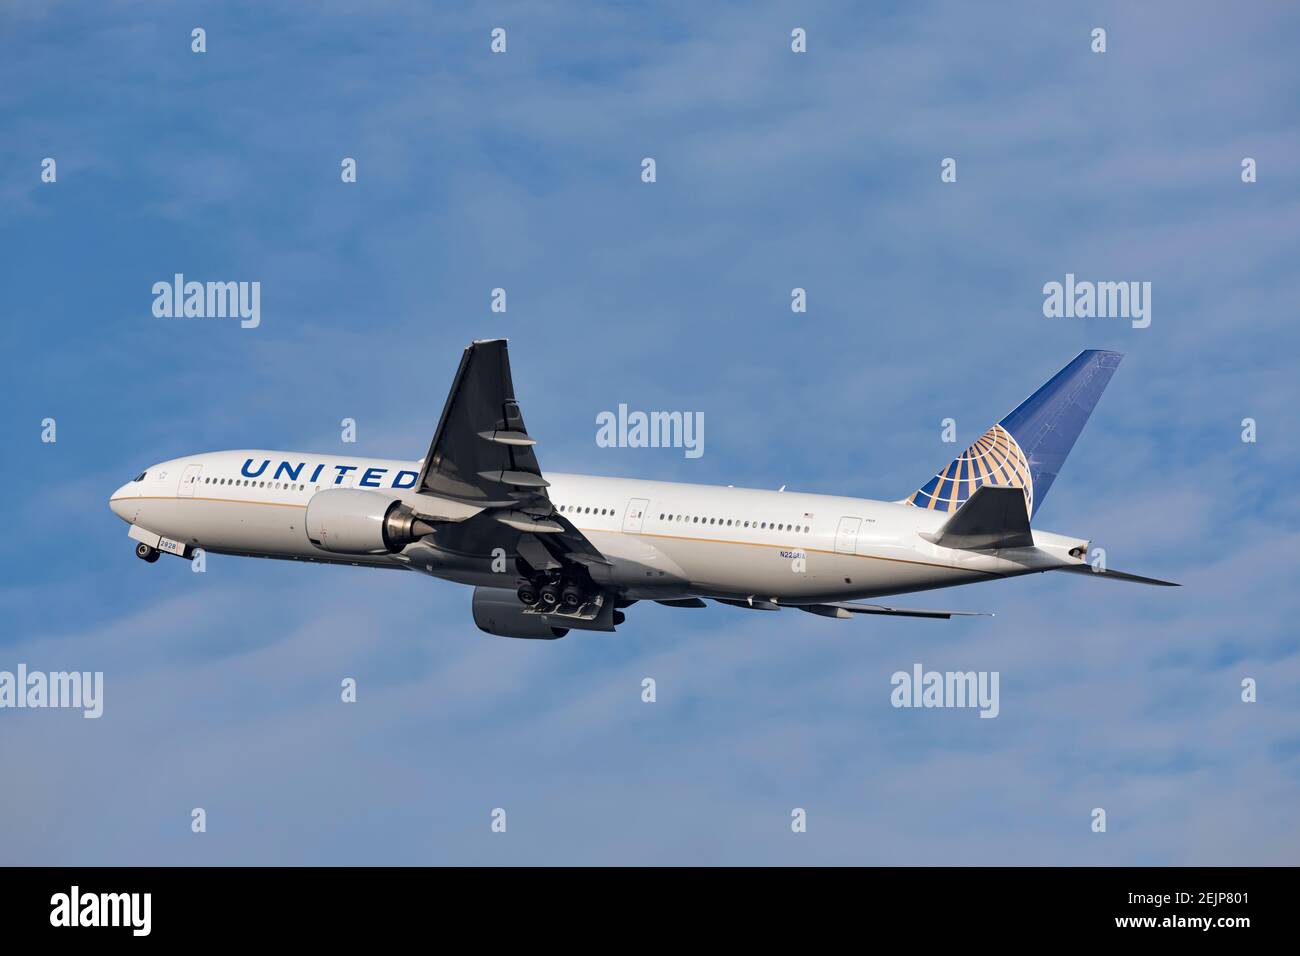 United Airlines Boeing 777 enregistrement N228UA décollage le 29 décembre 2019 de l'aéroport de Londres Heathrow, Middlesex, Royaume-Uni Banque D'Images